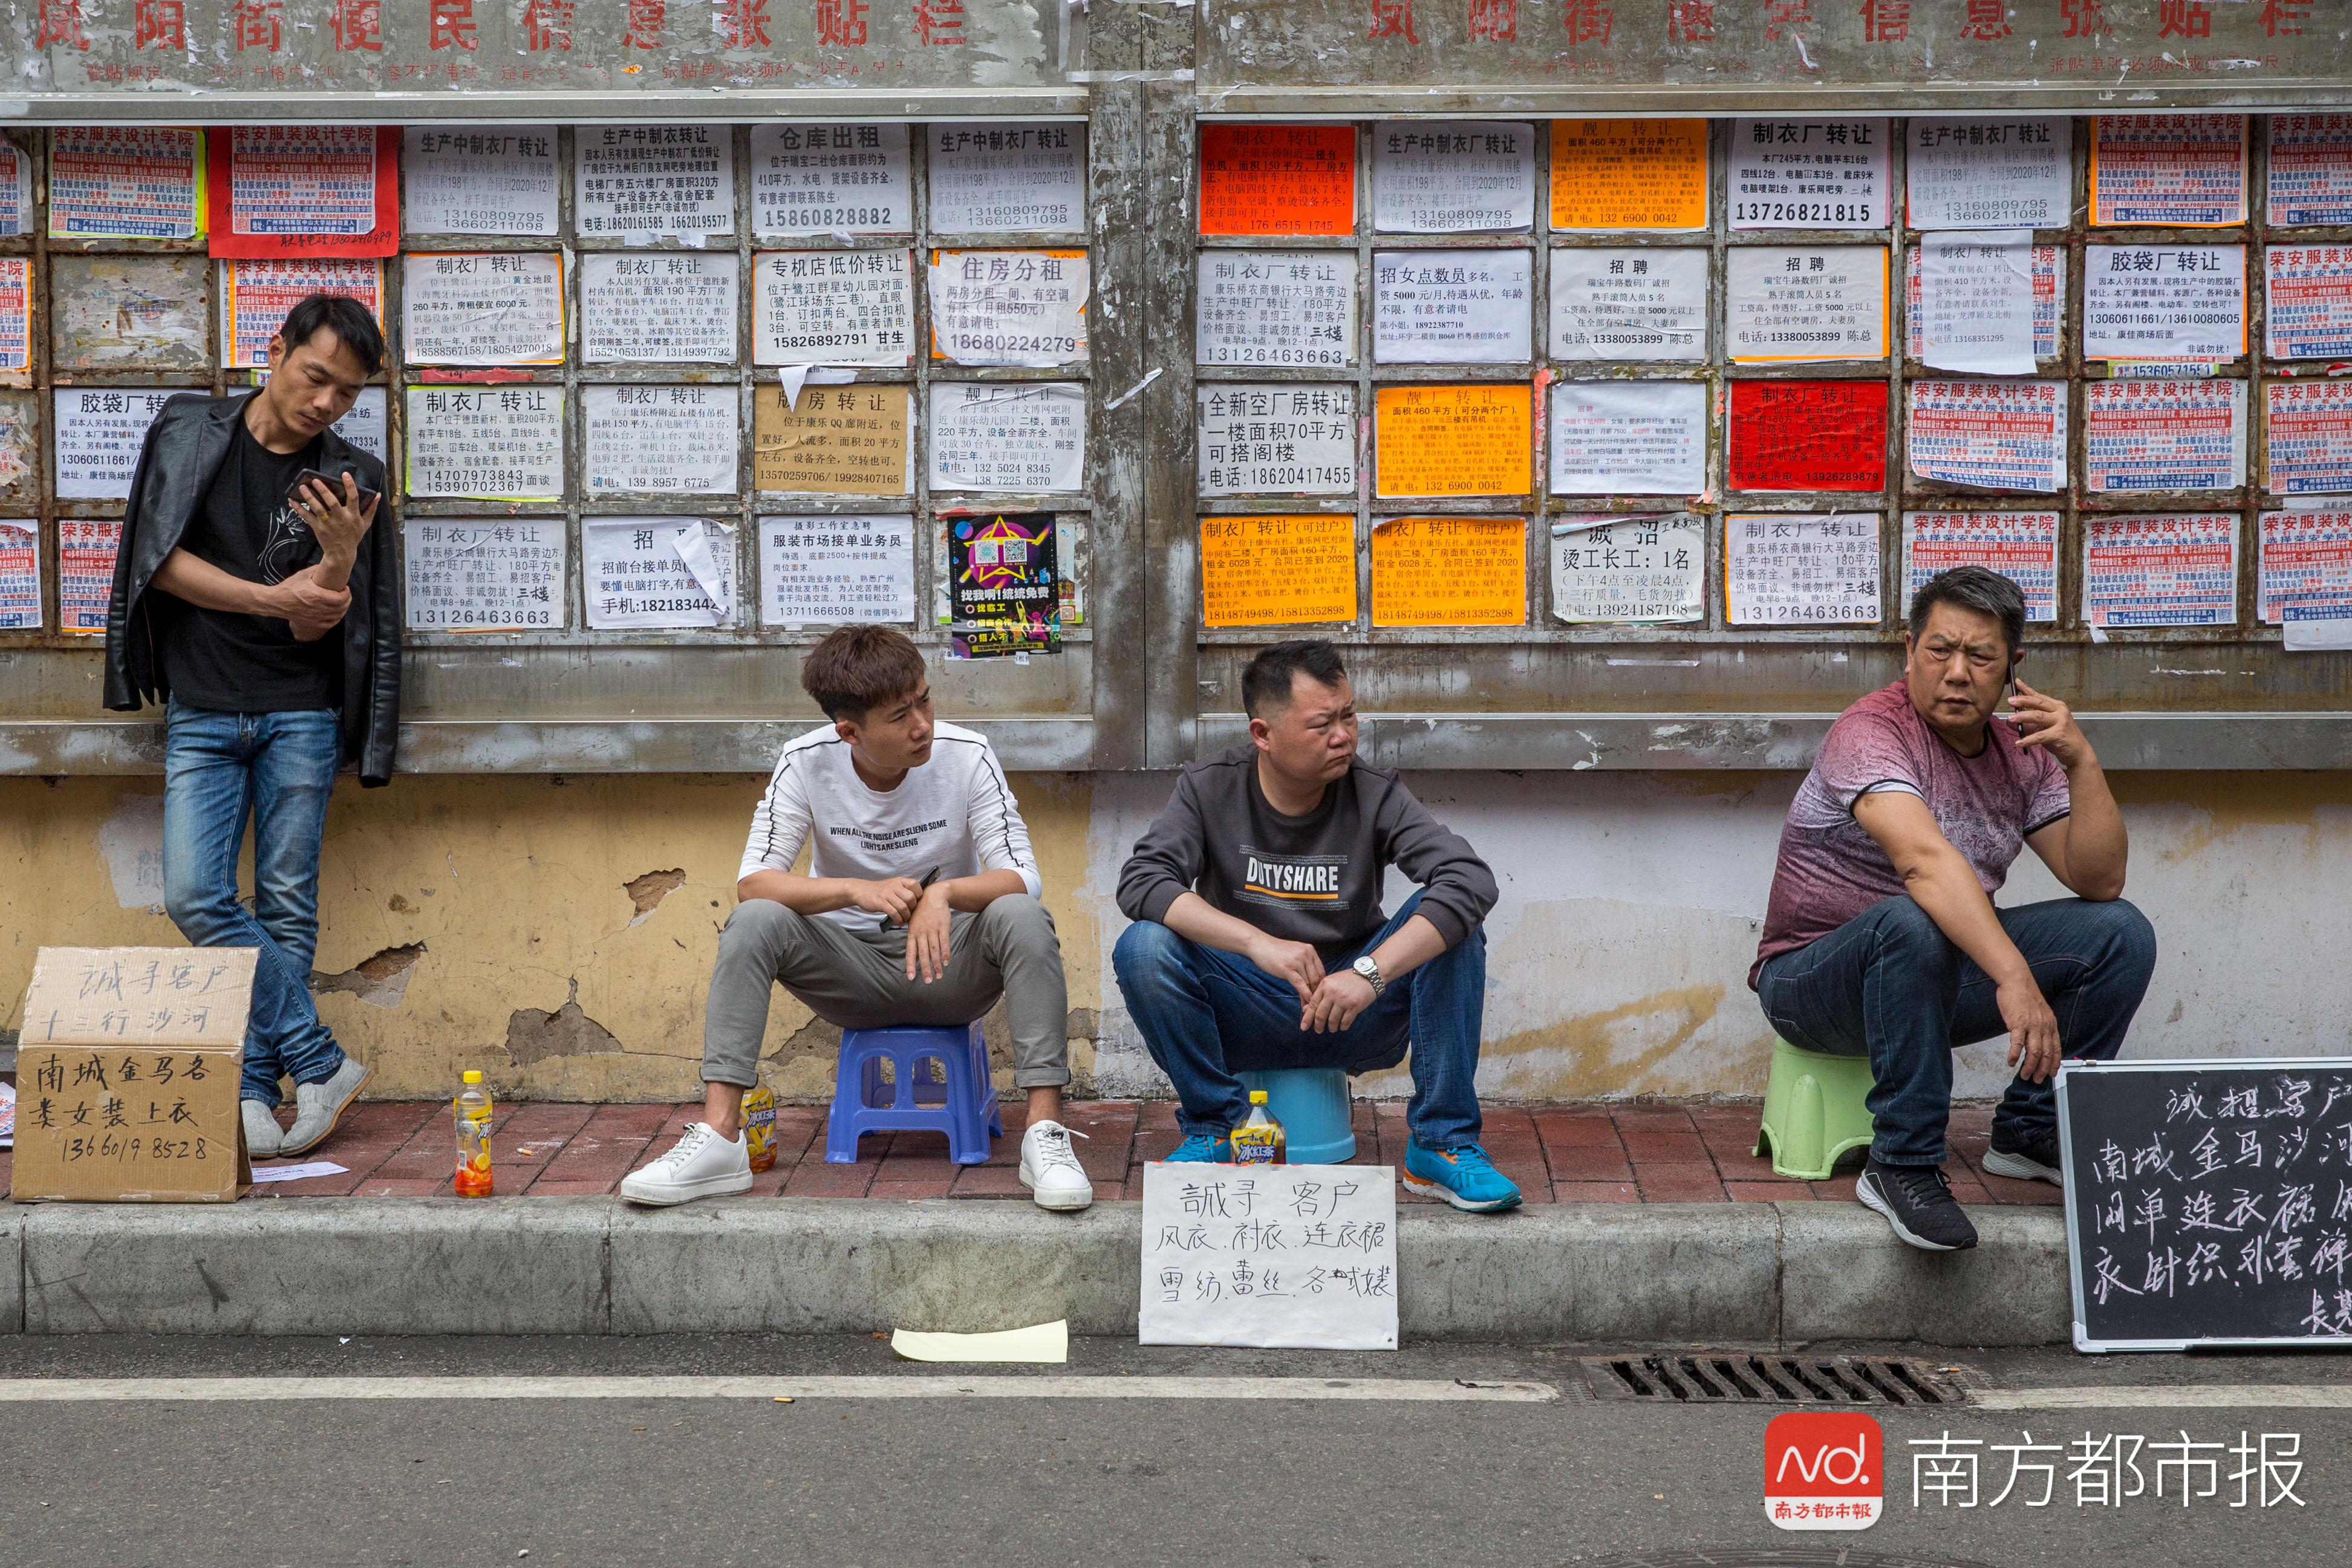 广州康乐村,制衣小作坊的"老板"们在路边等候,他们打出的不是"招工"的